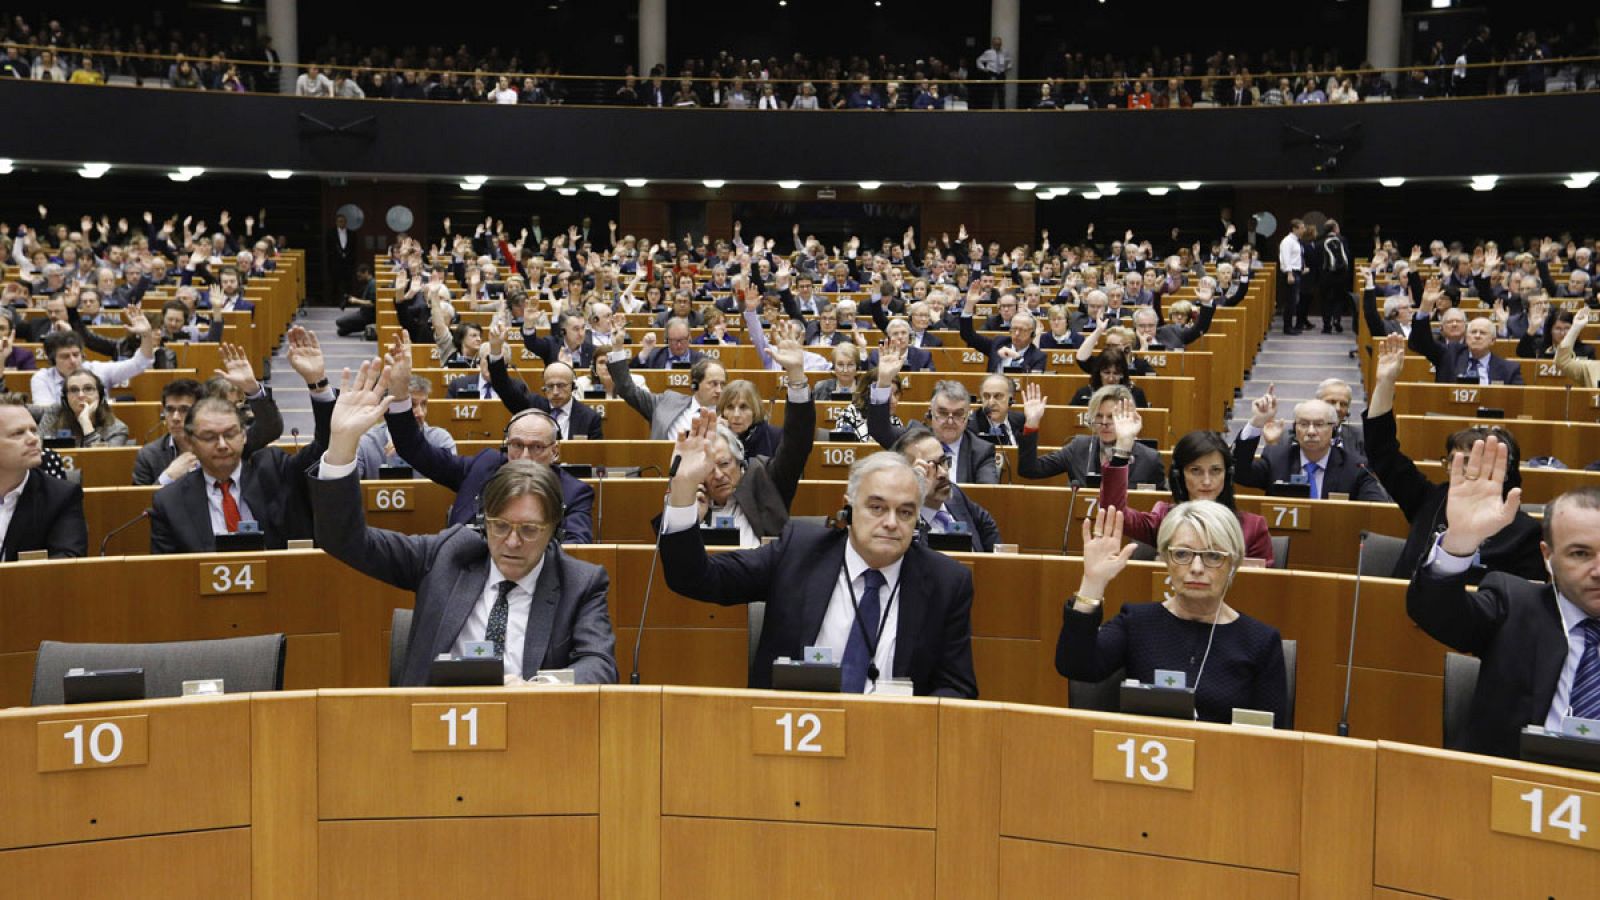 Miembros del Parlamento Europeo votan durante la sesión plenaria en Bruselas, Bélgica.